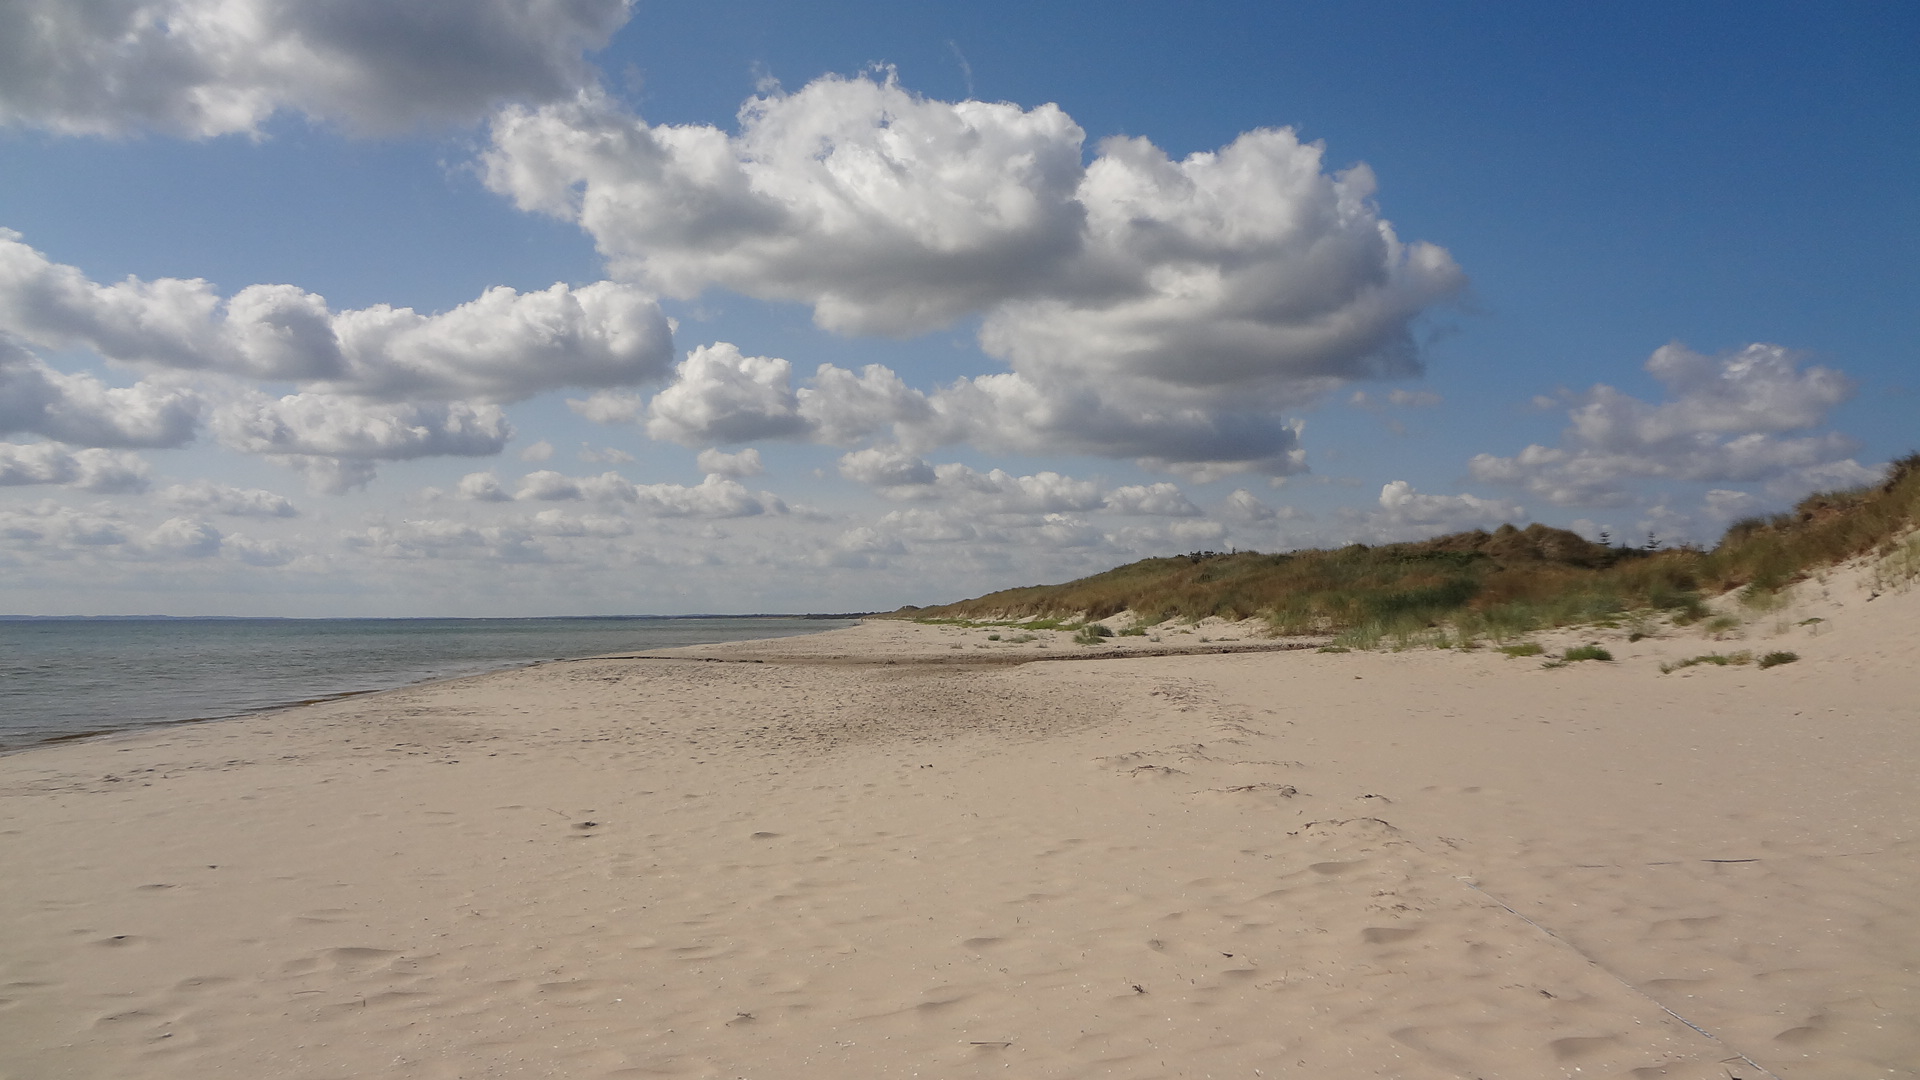 spiaggia danese in agosto